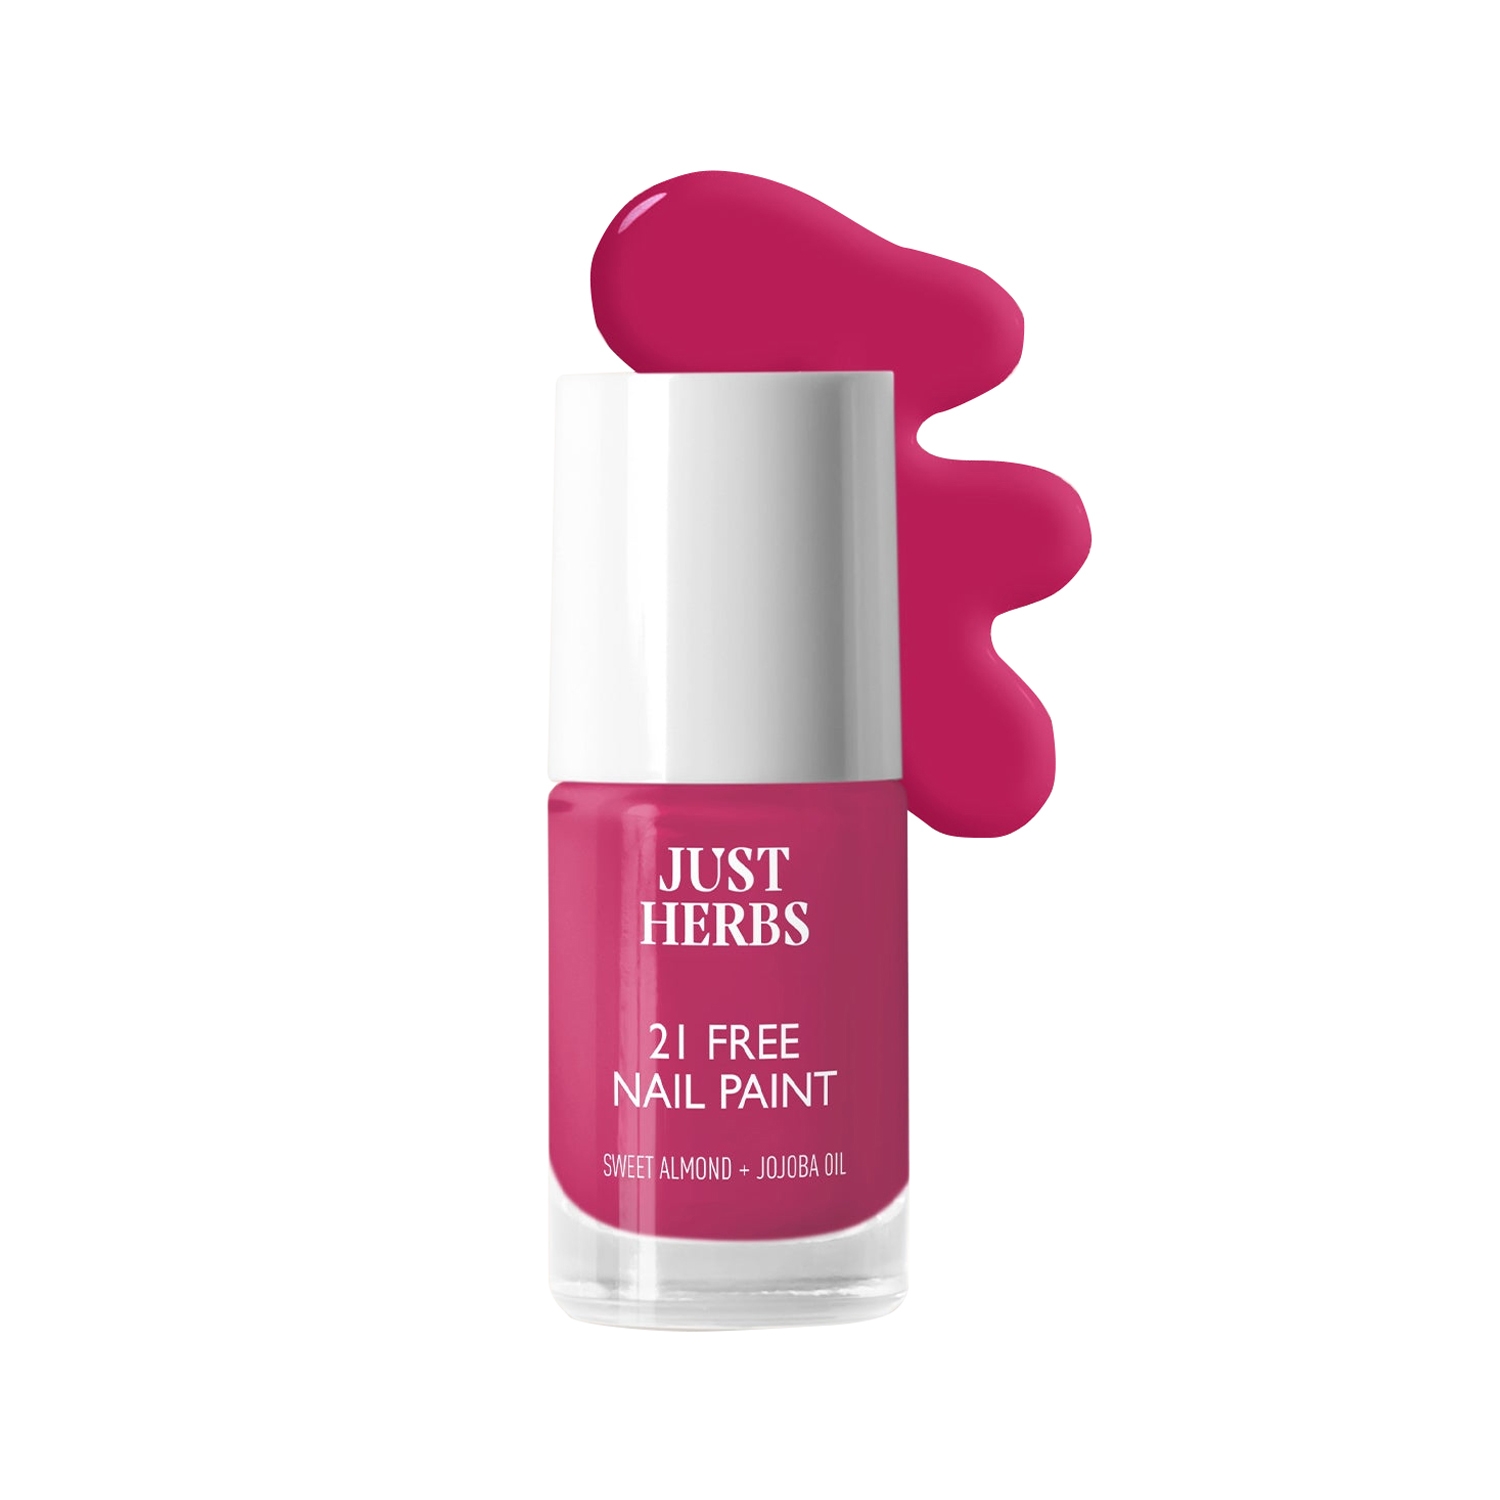 Just Herbs 21 Chemical Free Nail Polish - Blossom Pink (6ml)